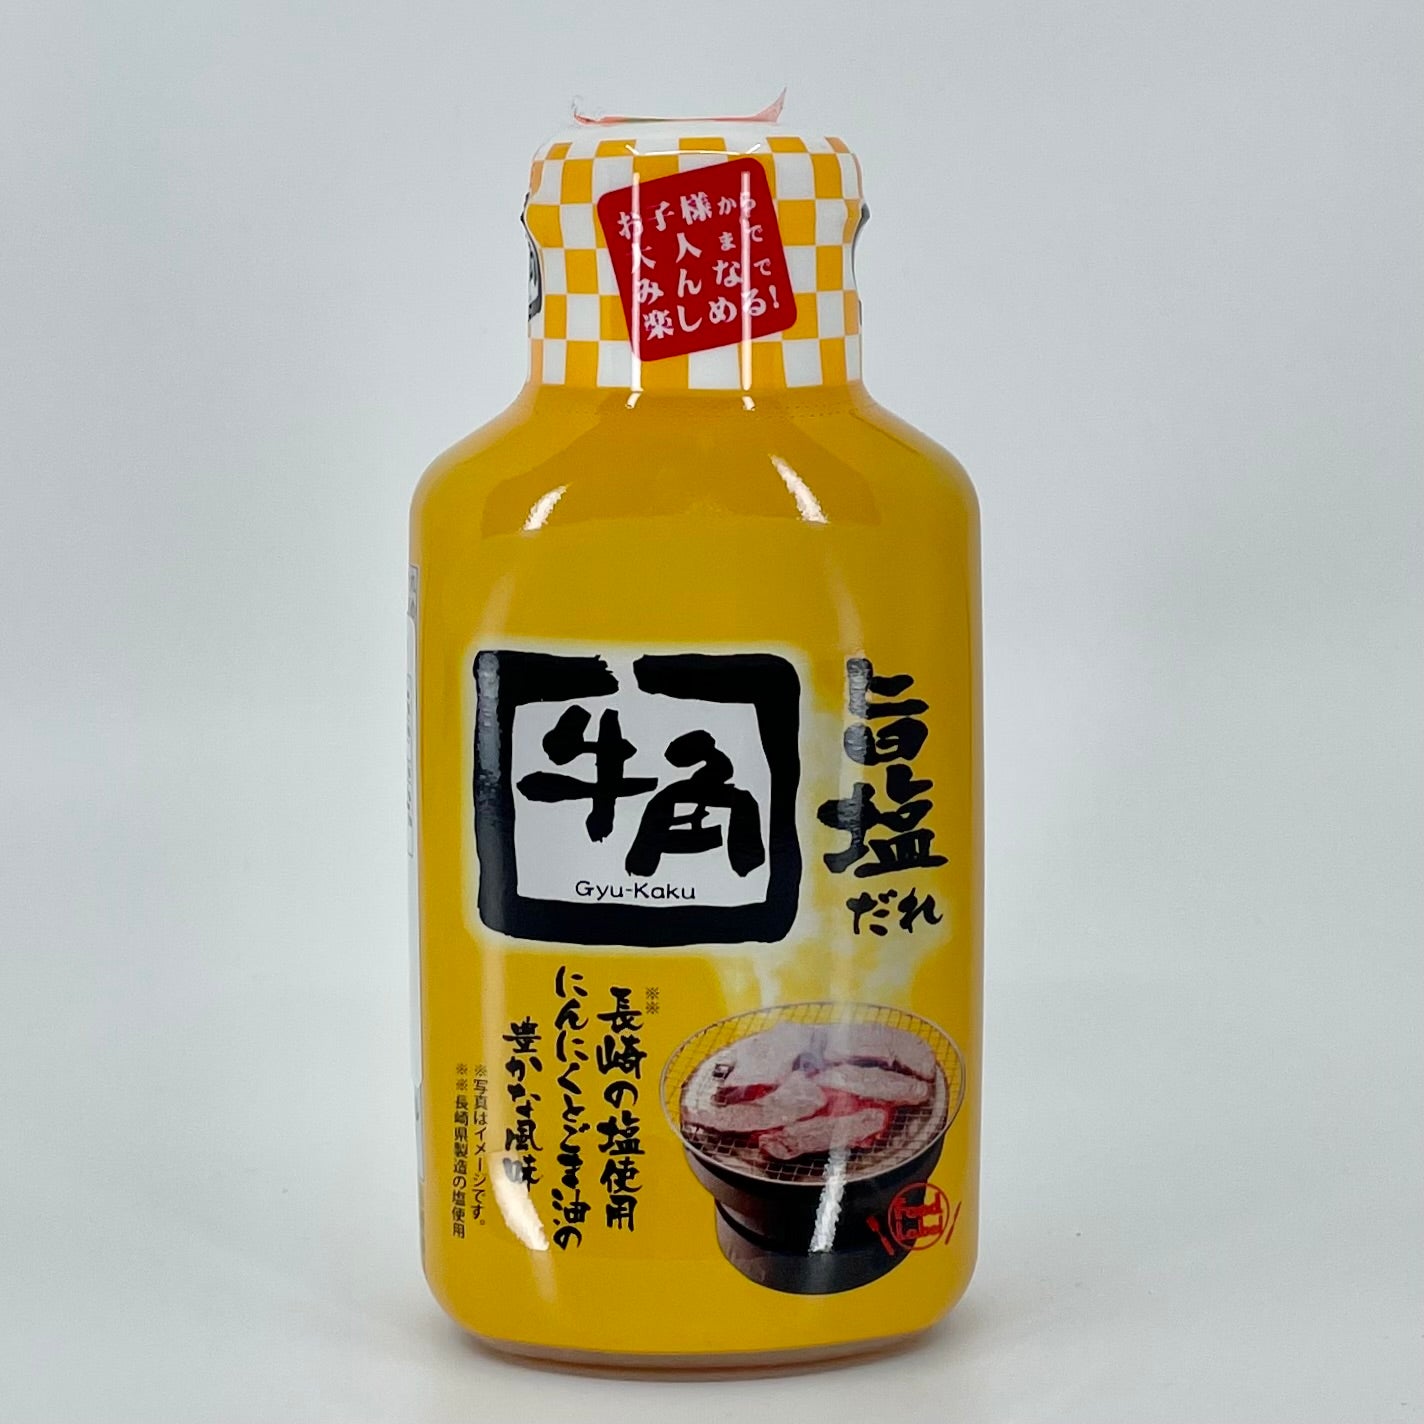 Gyukaku Uma Shio Tare BBQ Sauce (7.5 oz)